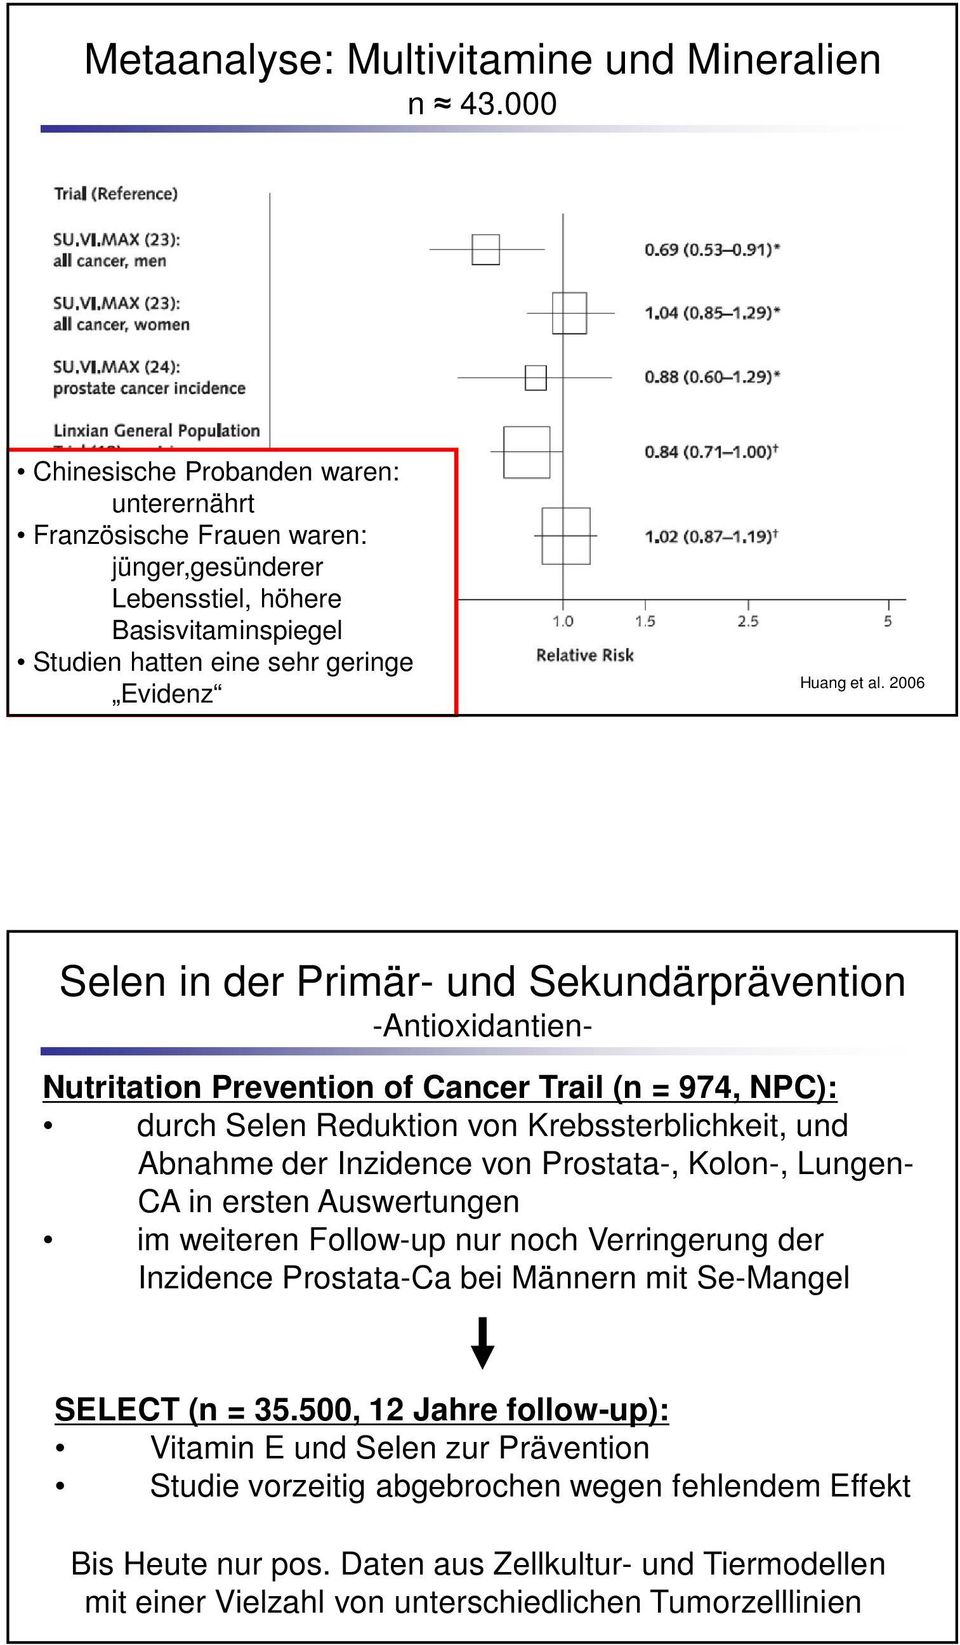 2006 Selen in der Primär- und Sekundärprävention -Antioxidantien- Nutritation Prevention of Cancer Trail (n = 974, NPC): durch Selen Reduktion von Krebssterblichkeit, und Abnahme der Inzidence von